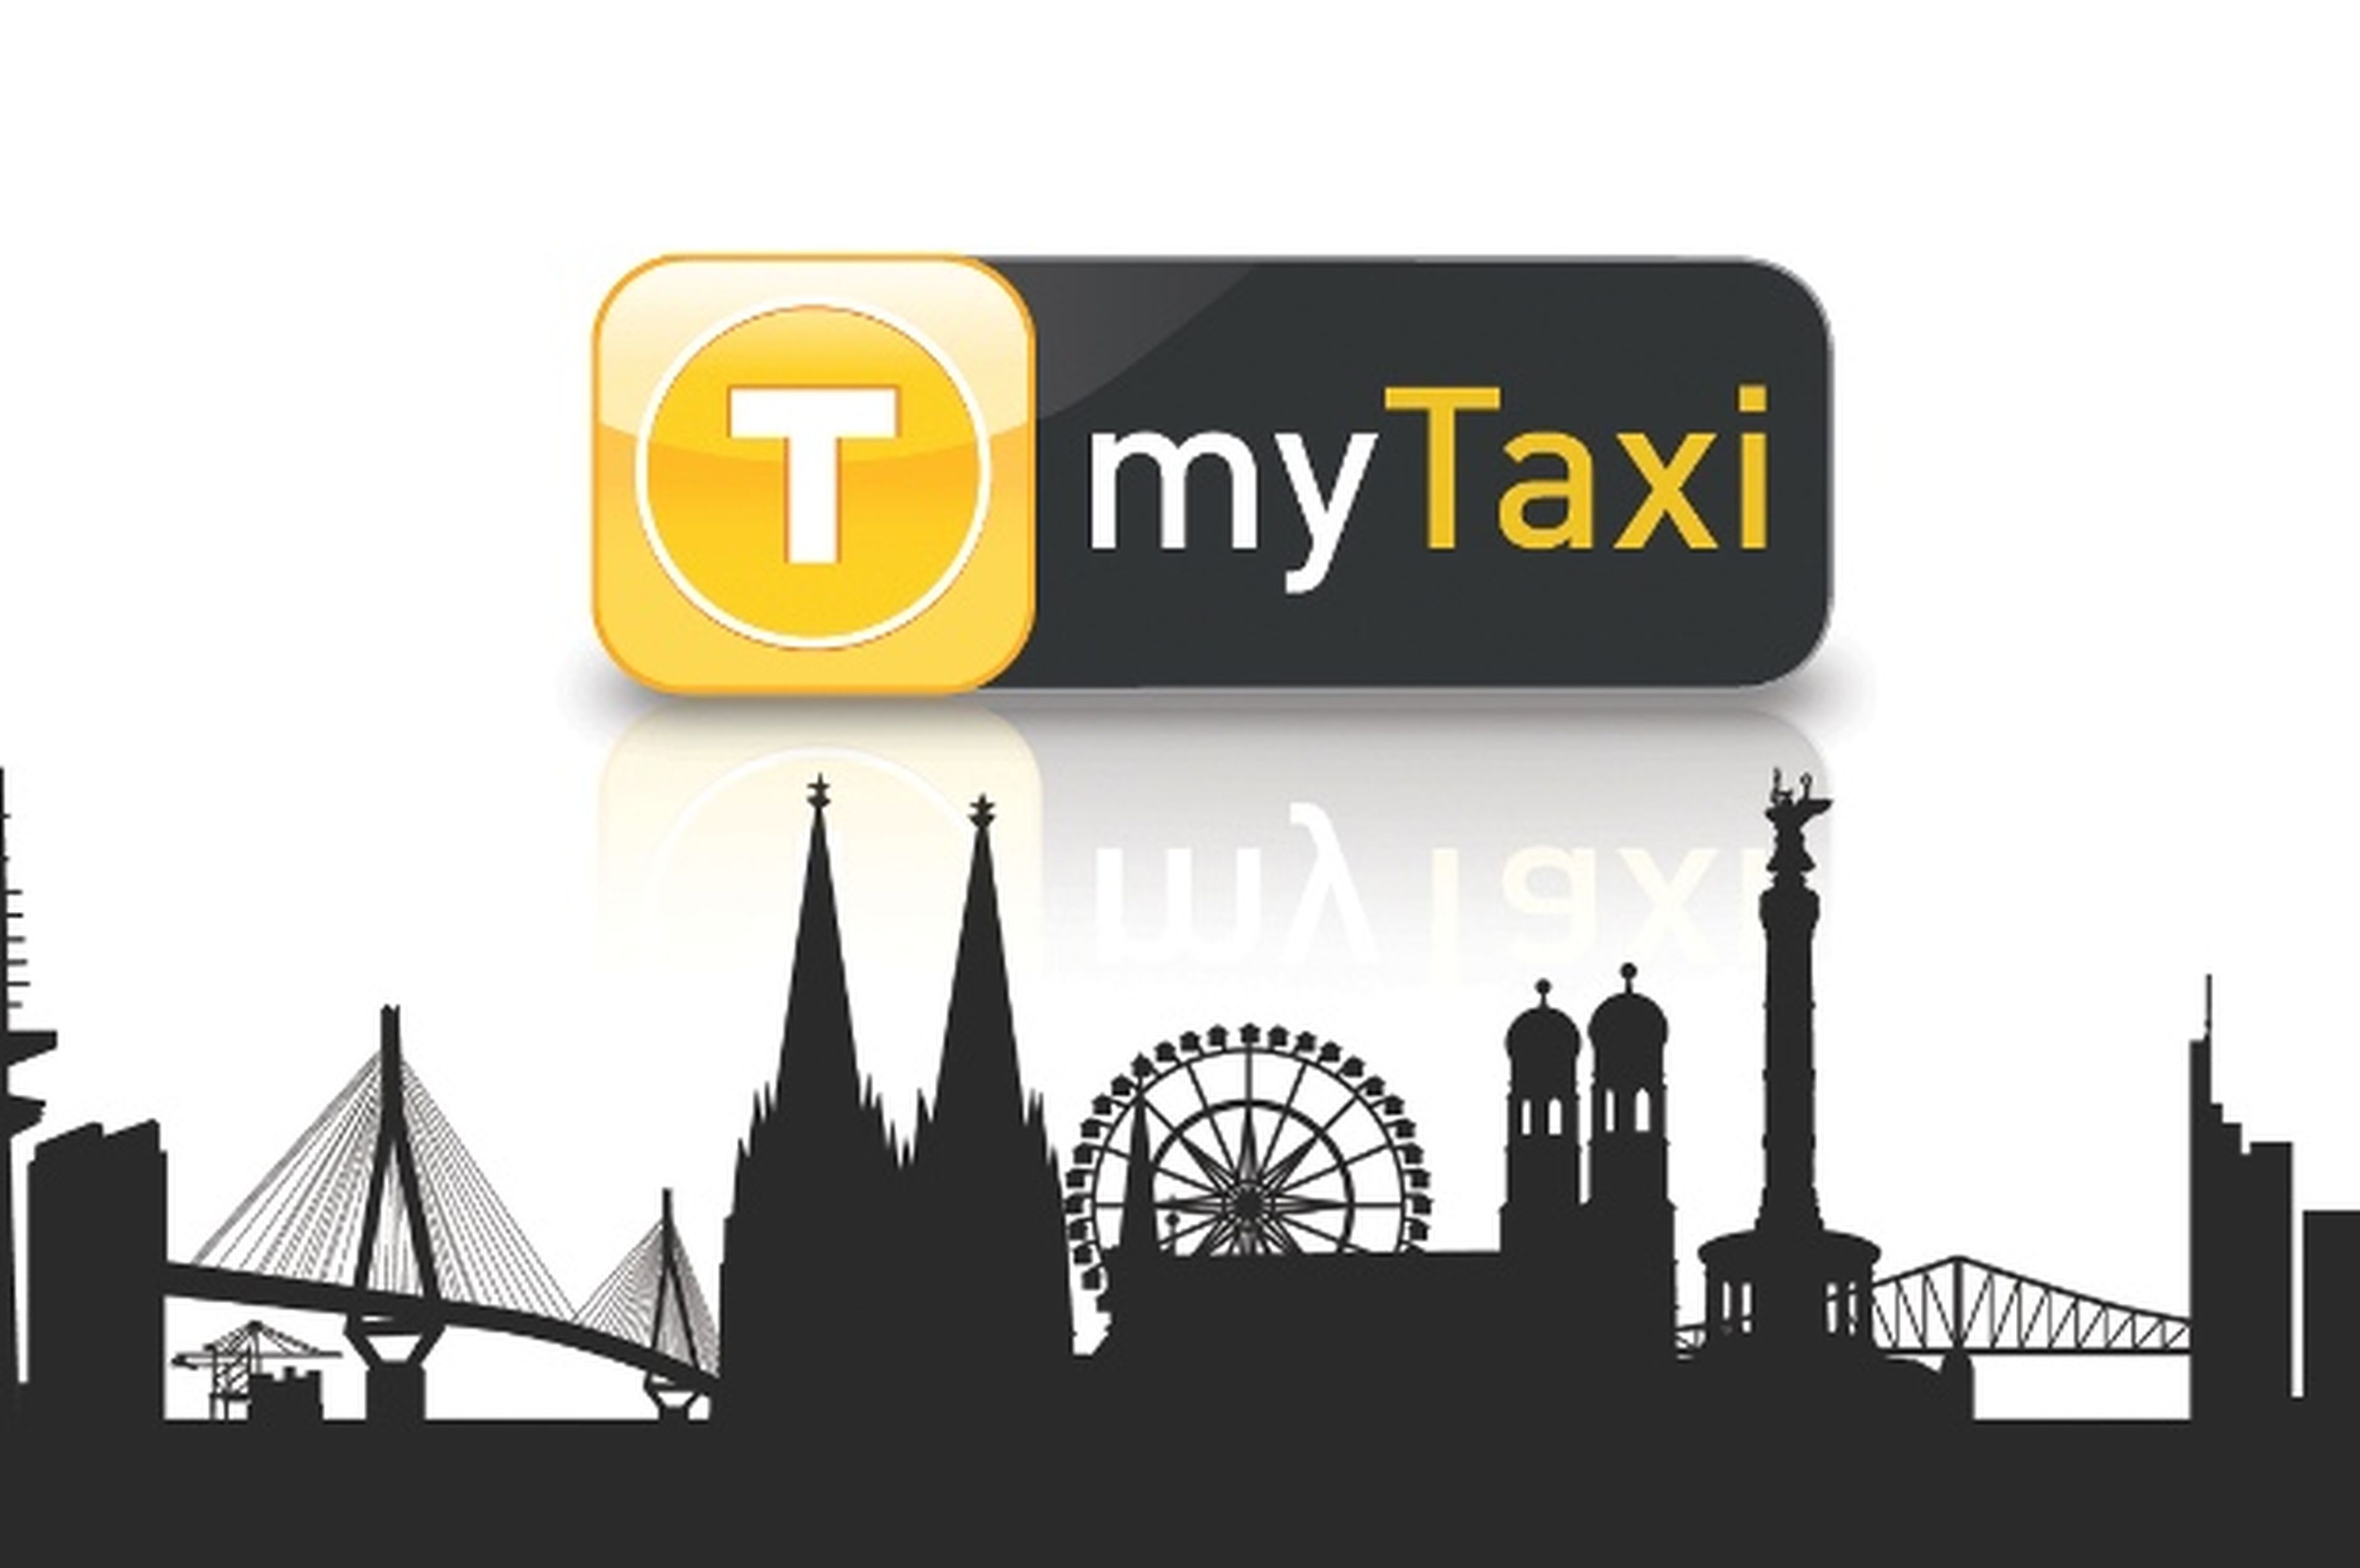 myTaxi, pide taxi con una app